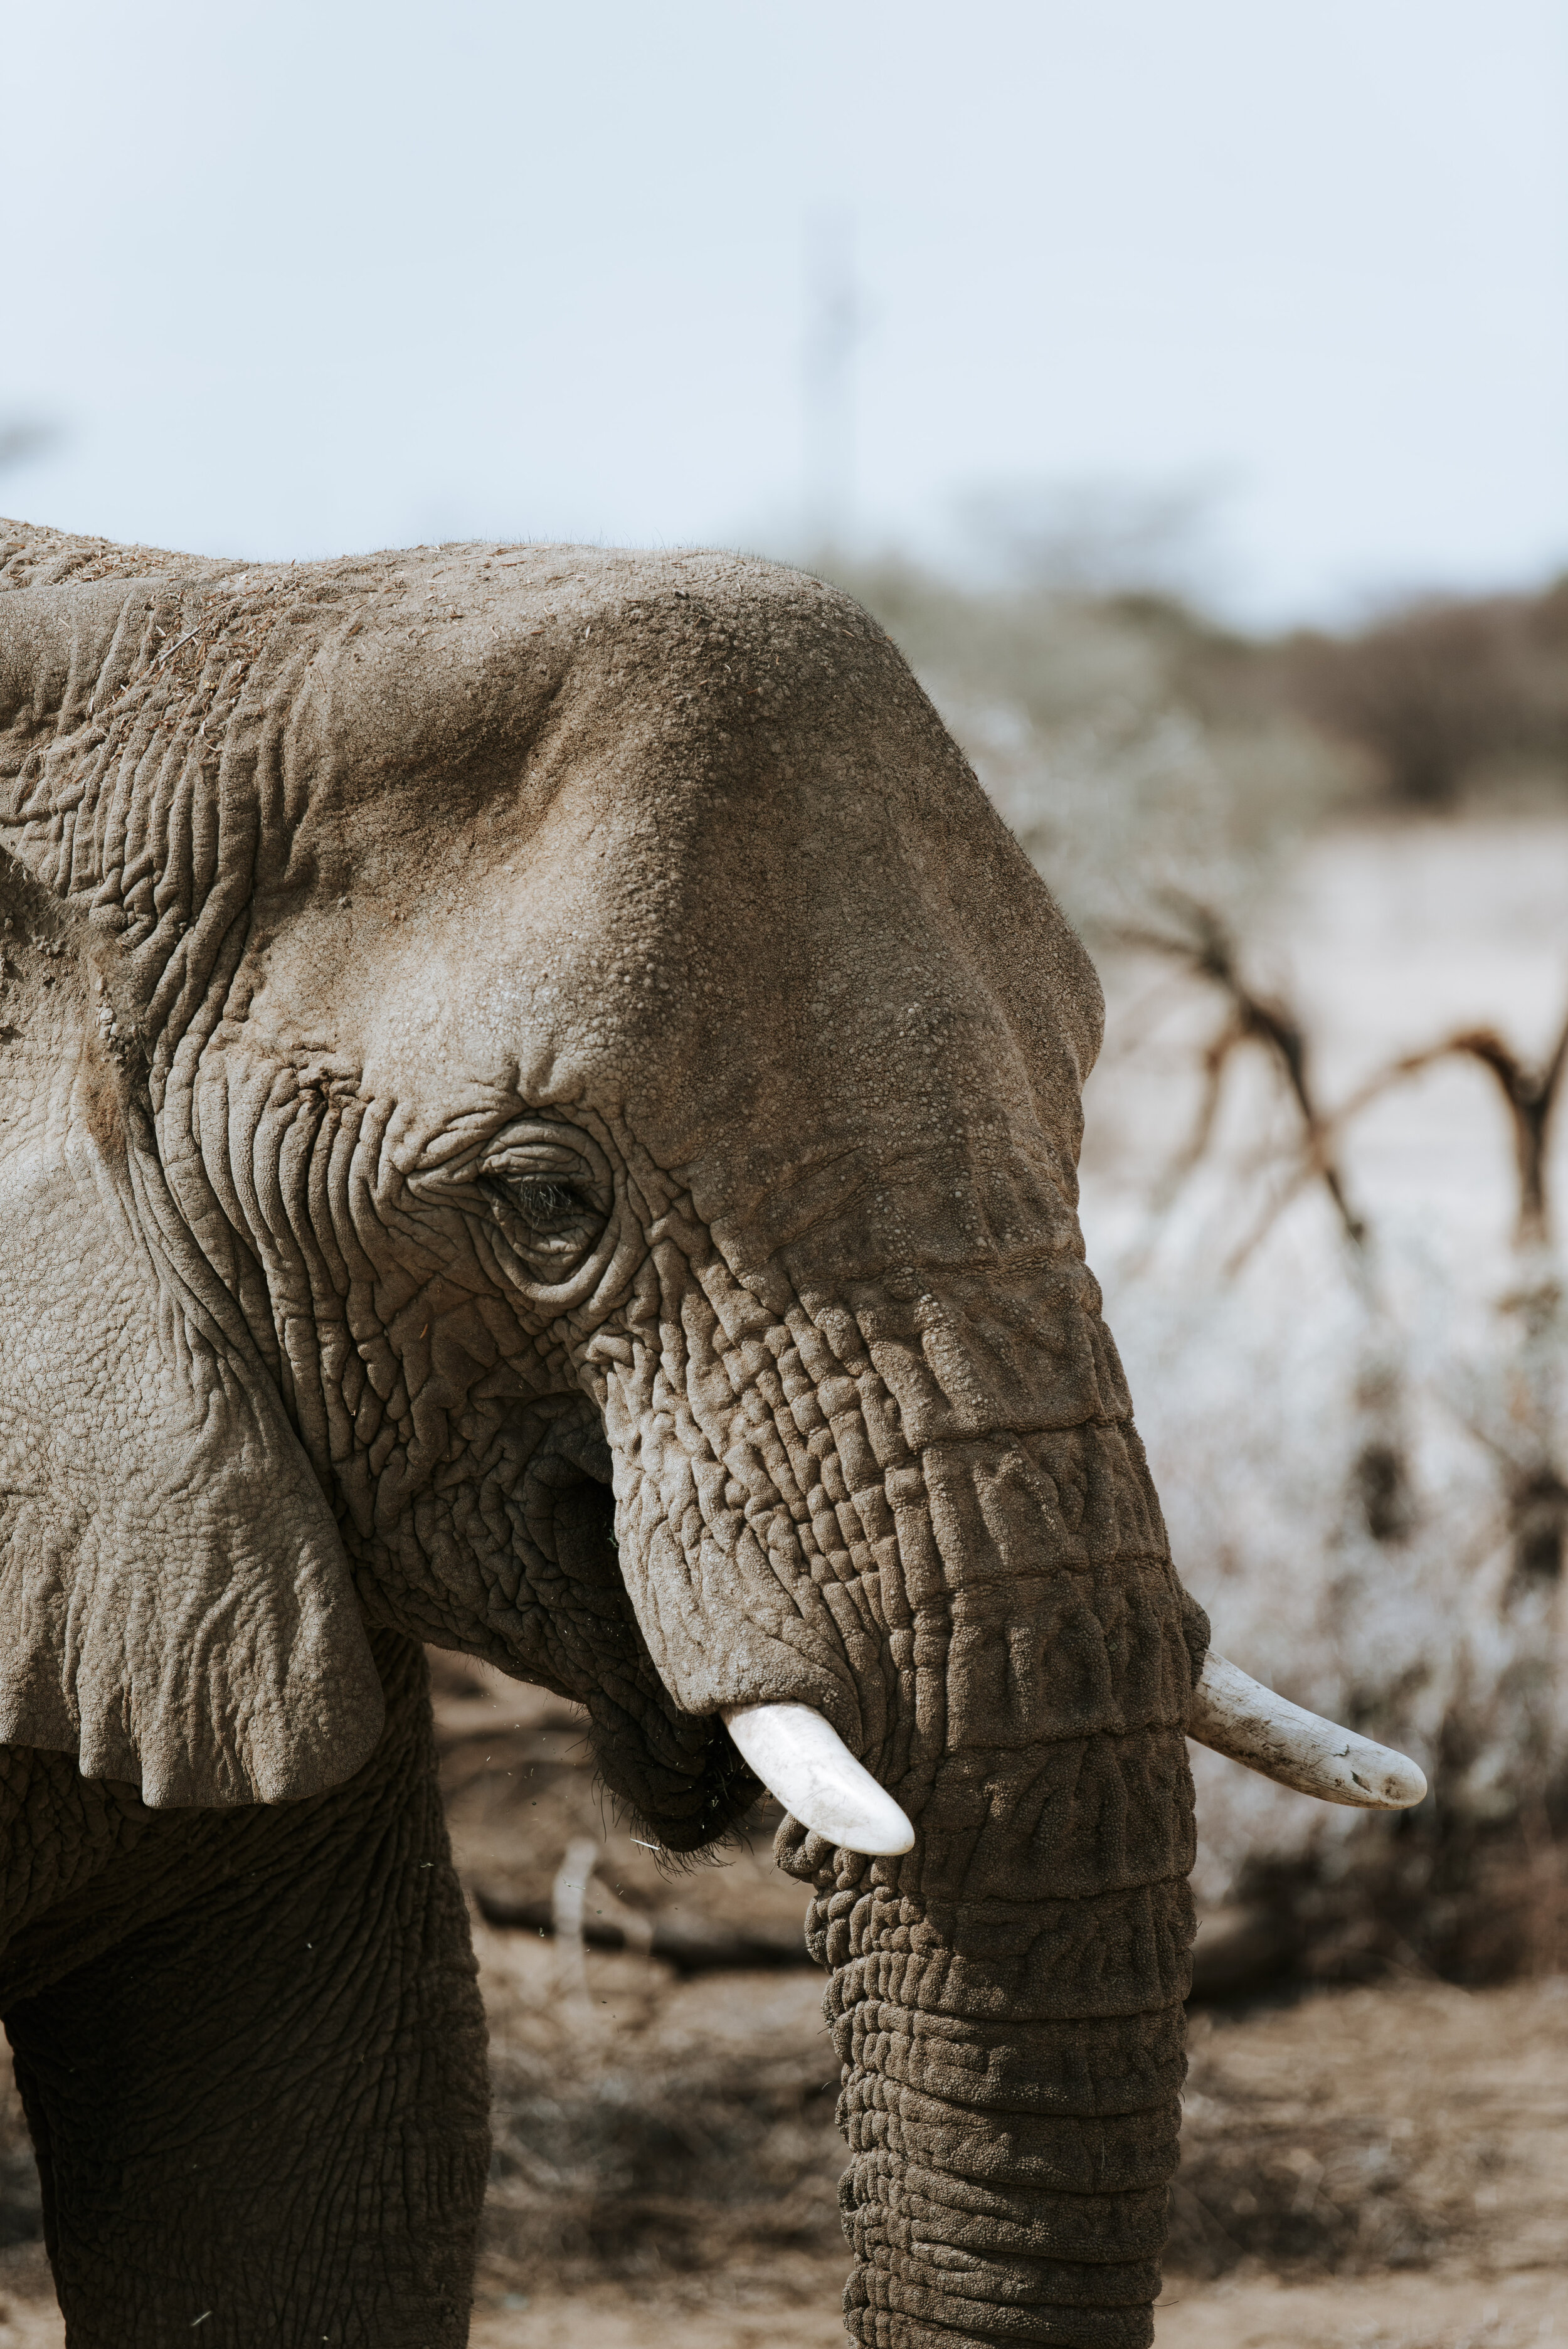 Omaruru game lodge - Elephants - Namibia Road Trip Itinerary